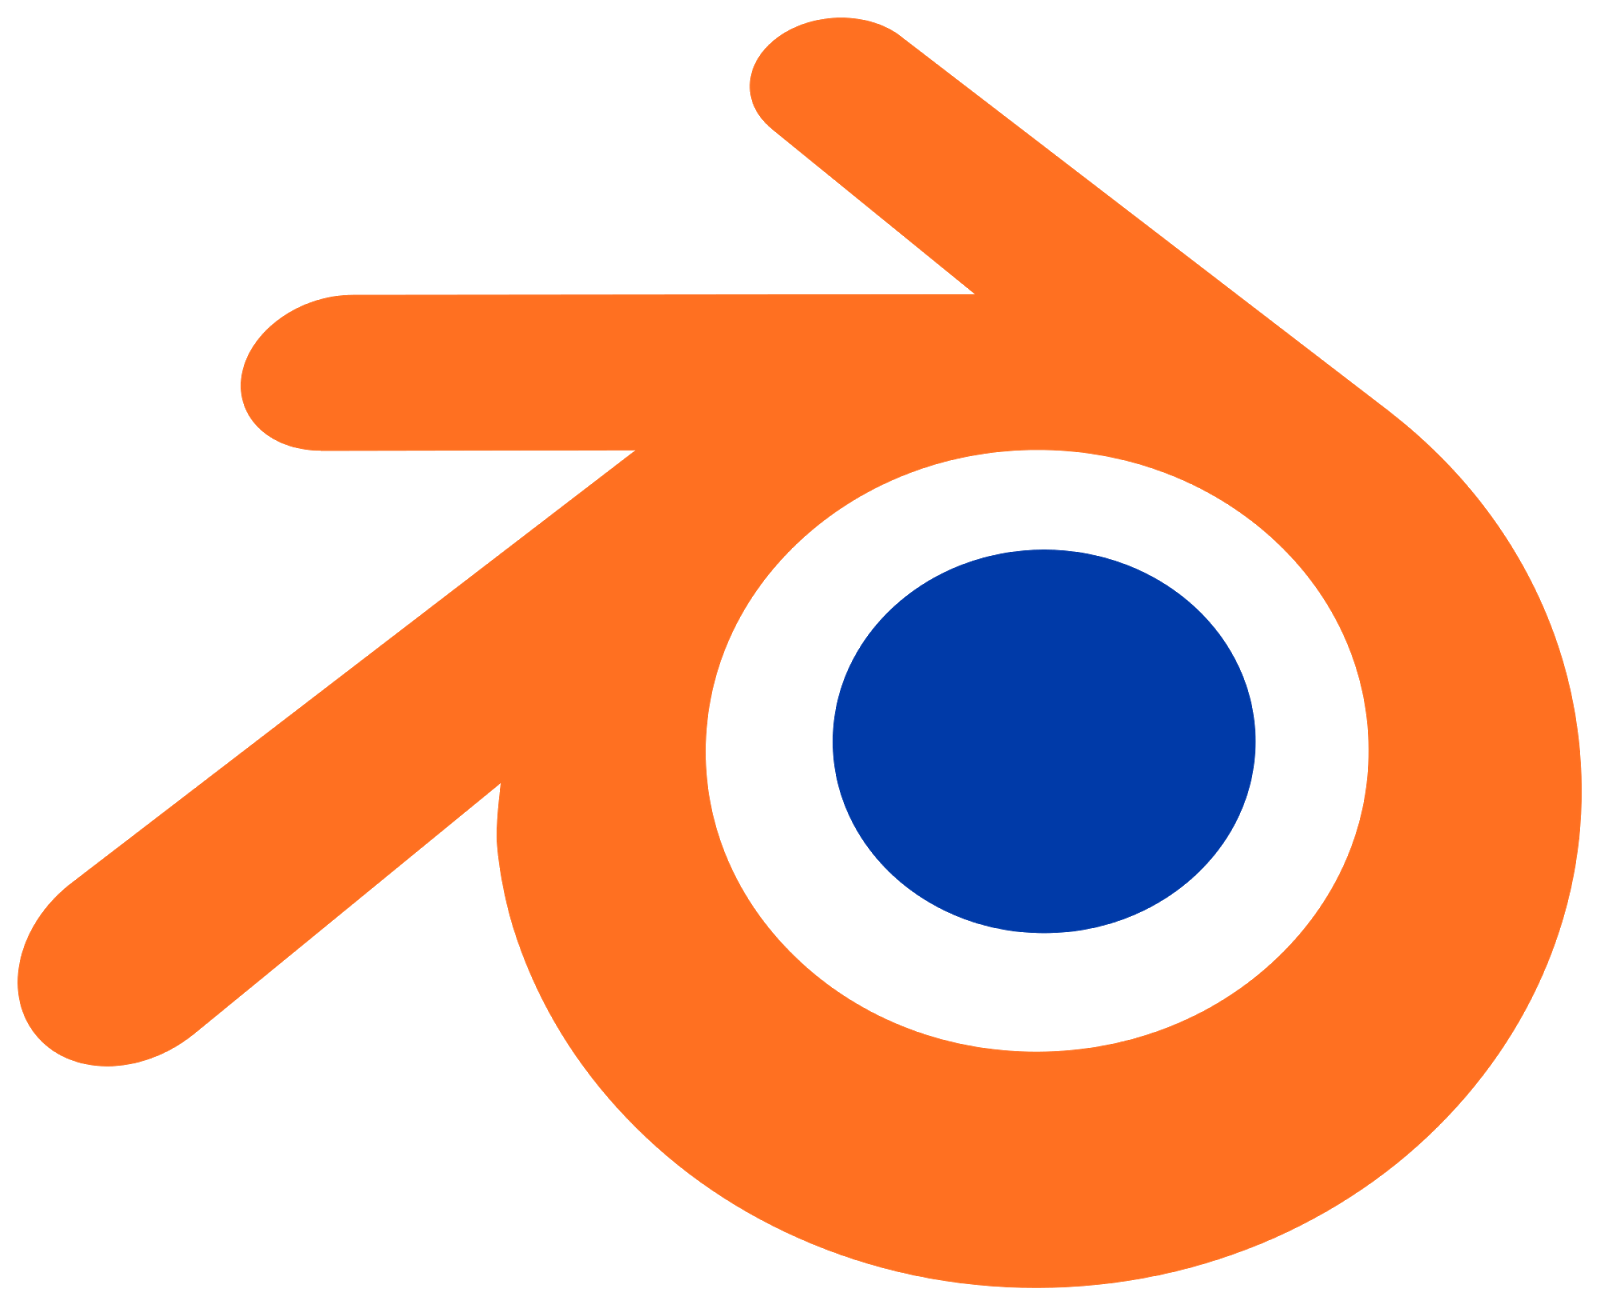 blender logo design